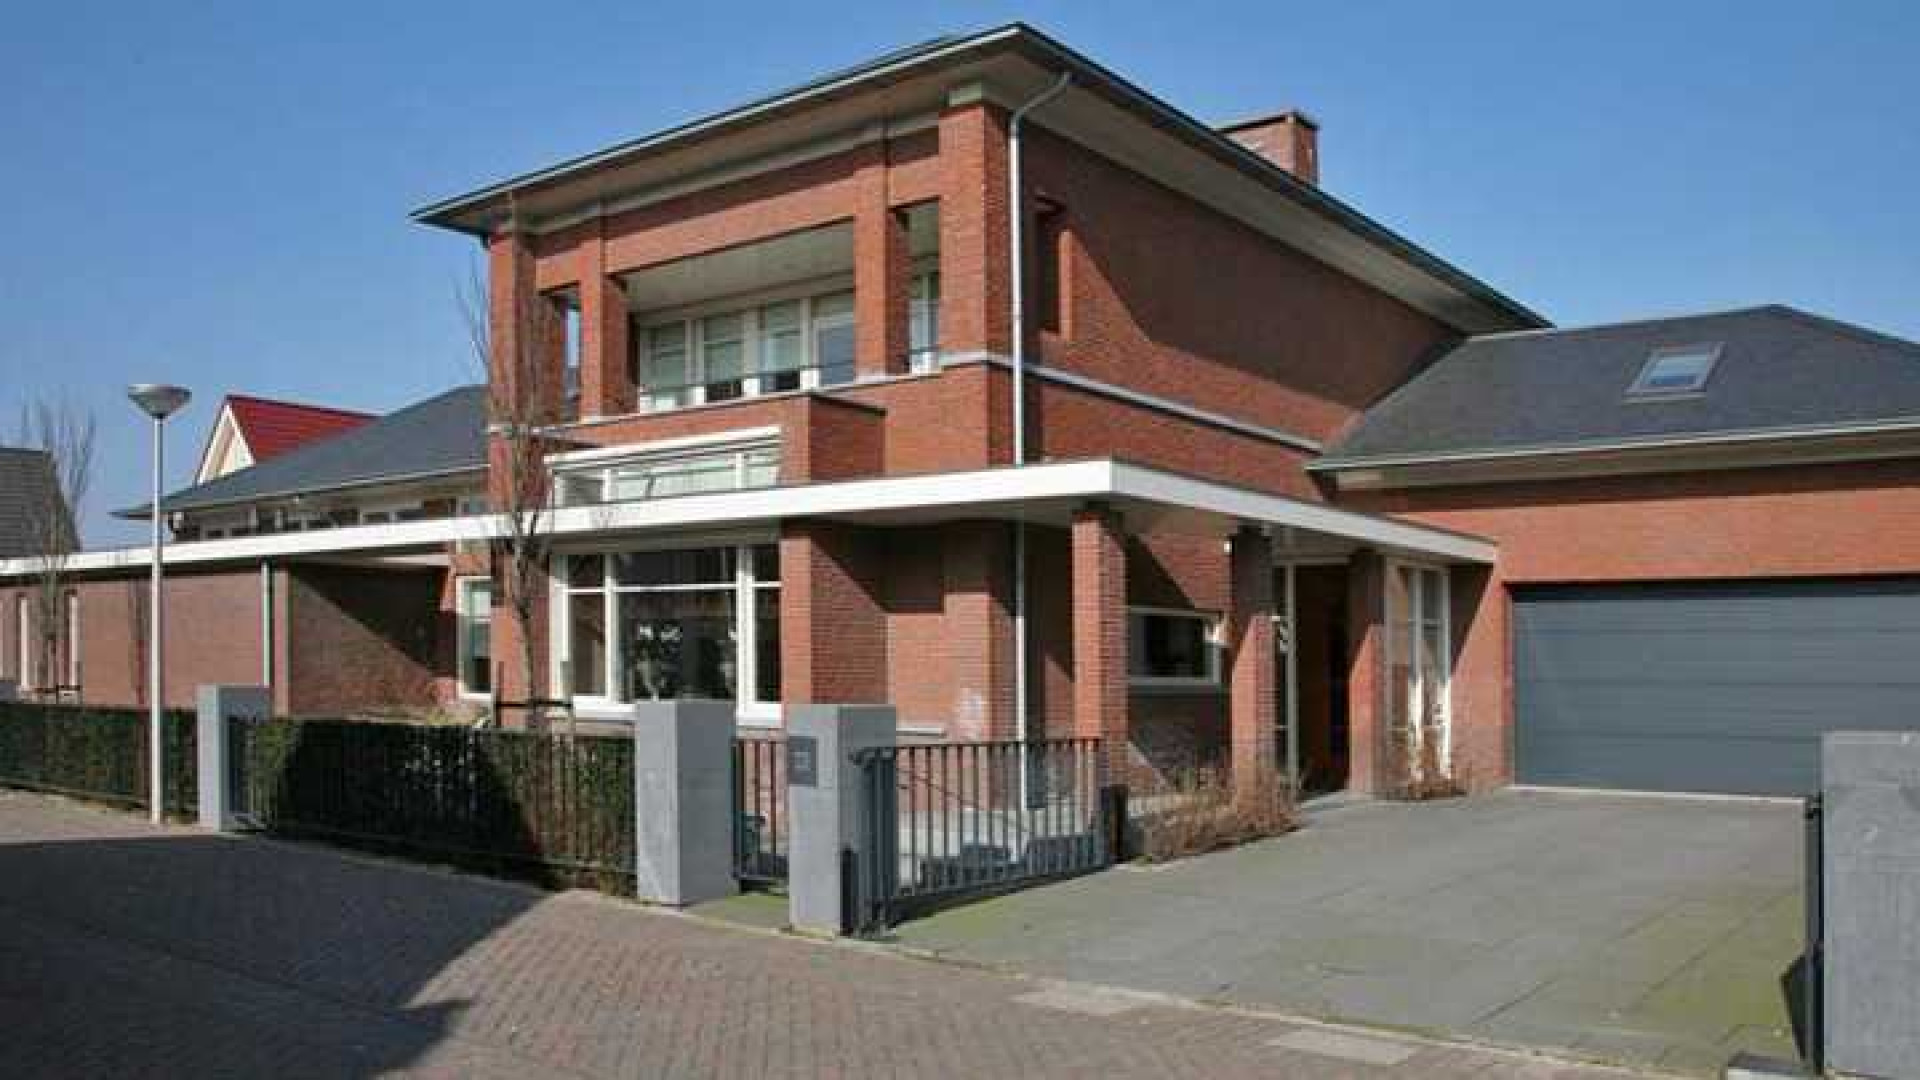 Villa Wesley en Yolanthe in Vleuten eindelijk verkocht. Zie foto's